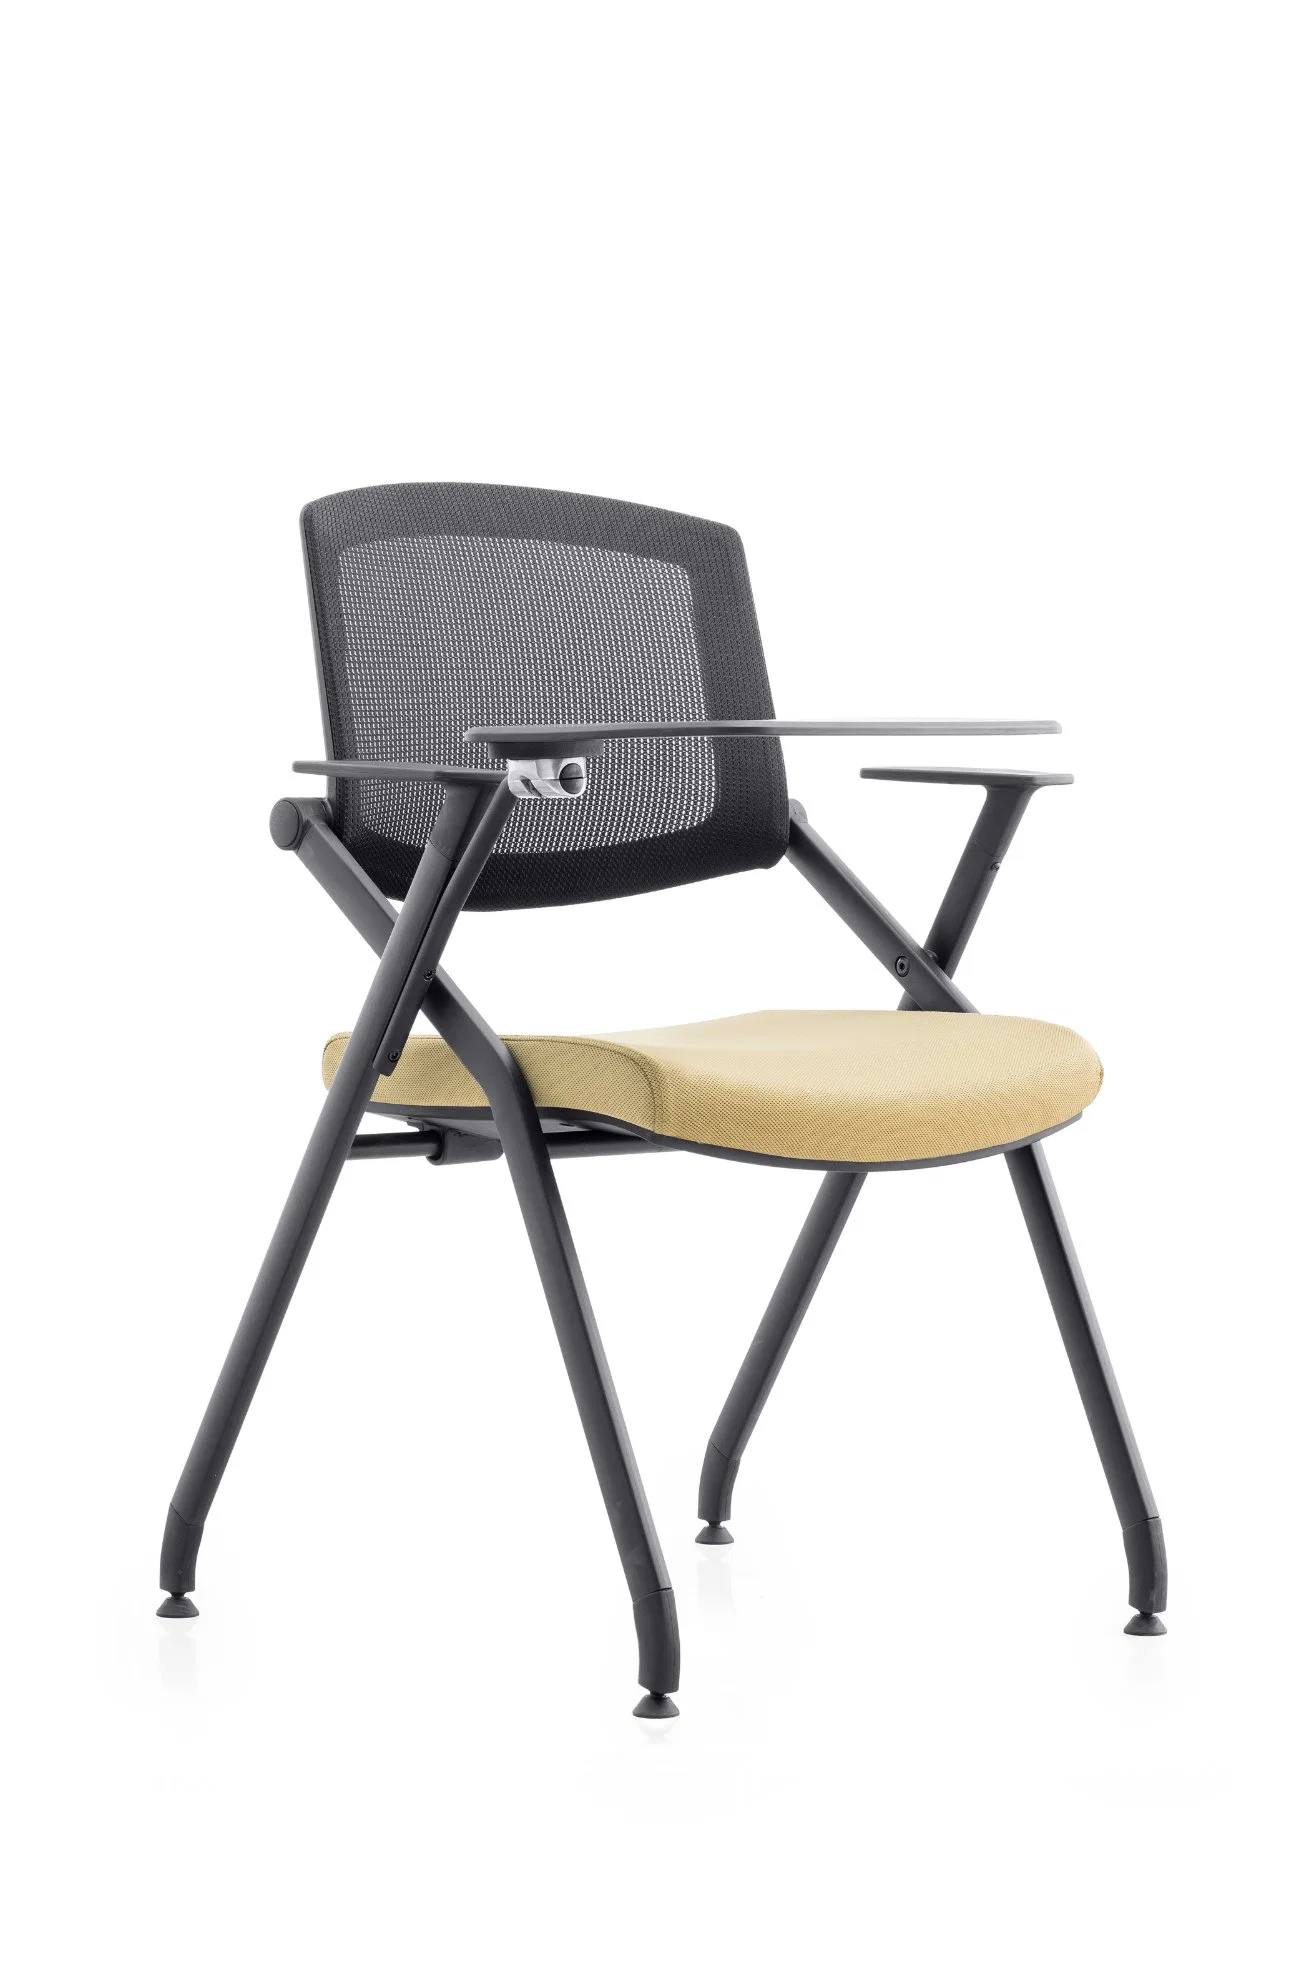 Mobiliario de la escuela Folding &amp; Foldable Mesh Back &amp; Seat Fabri Silla de reunión de formación de estudiantes silla de reunión inclinación de la parte posterior de moldeo espuma de asiento Mesa de escritura armada